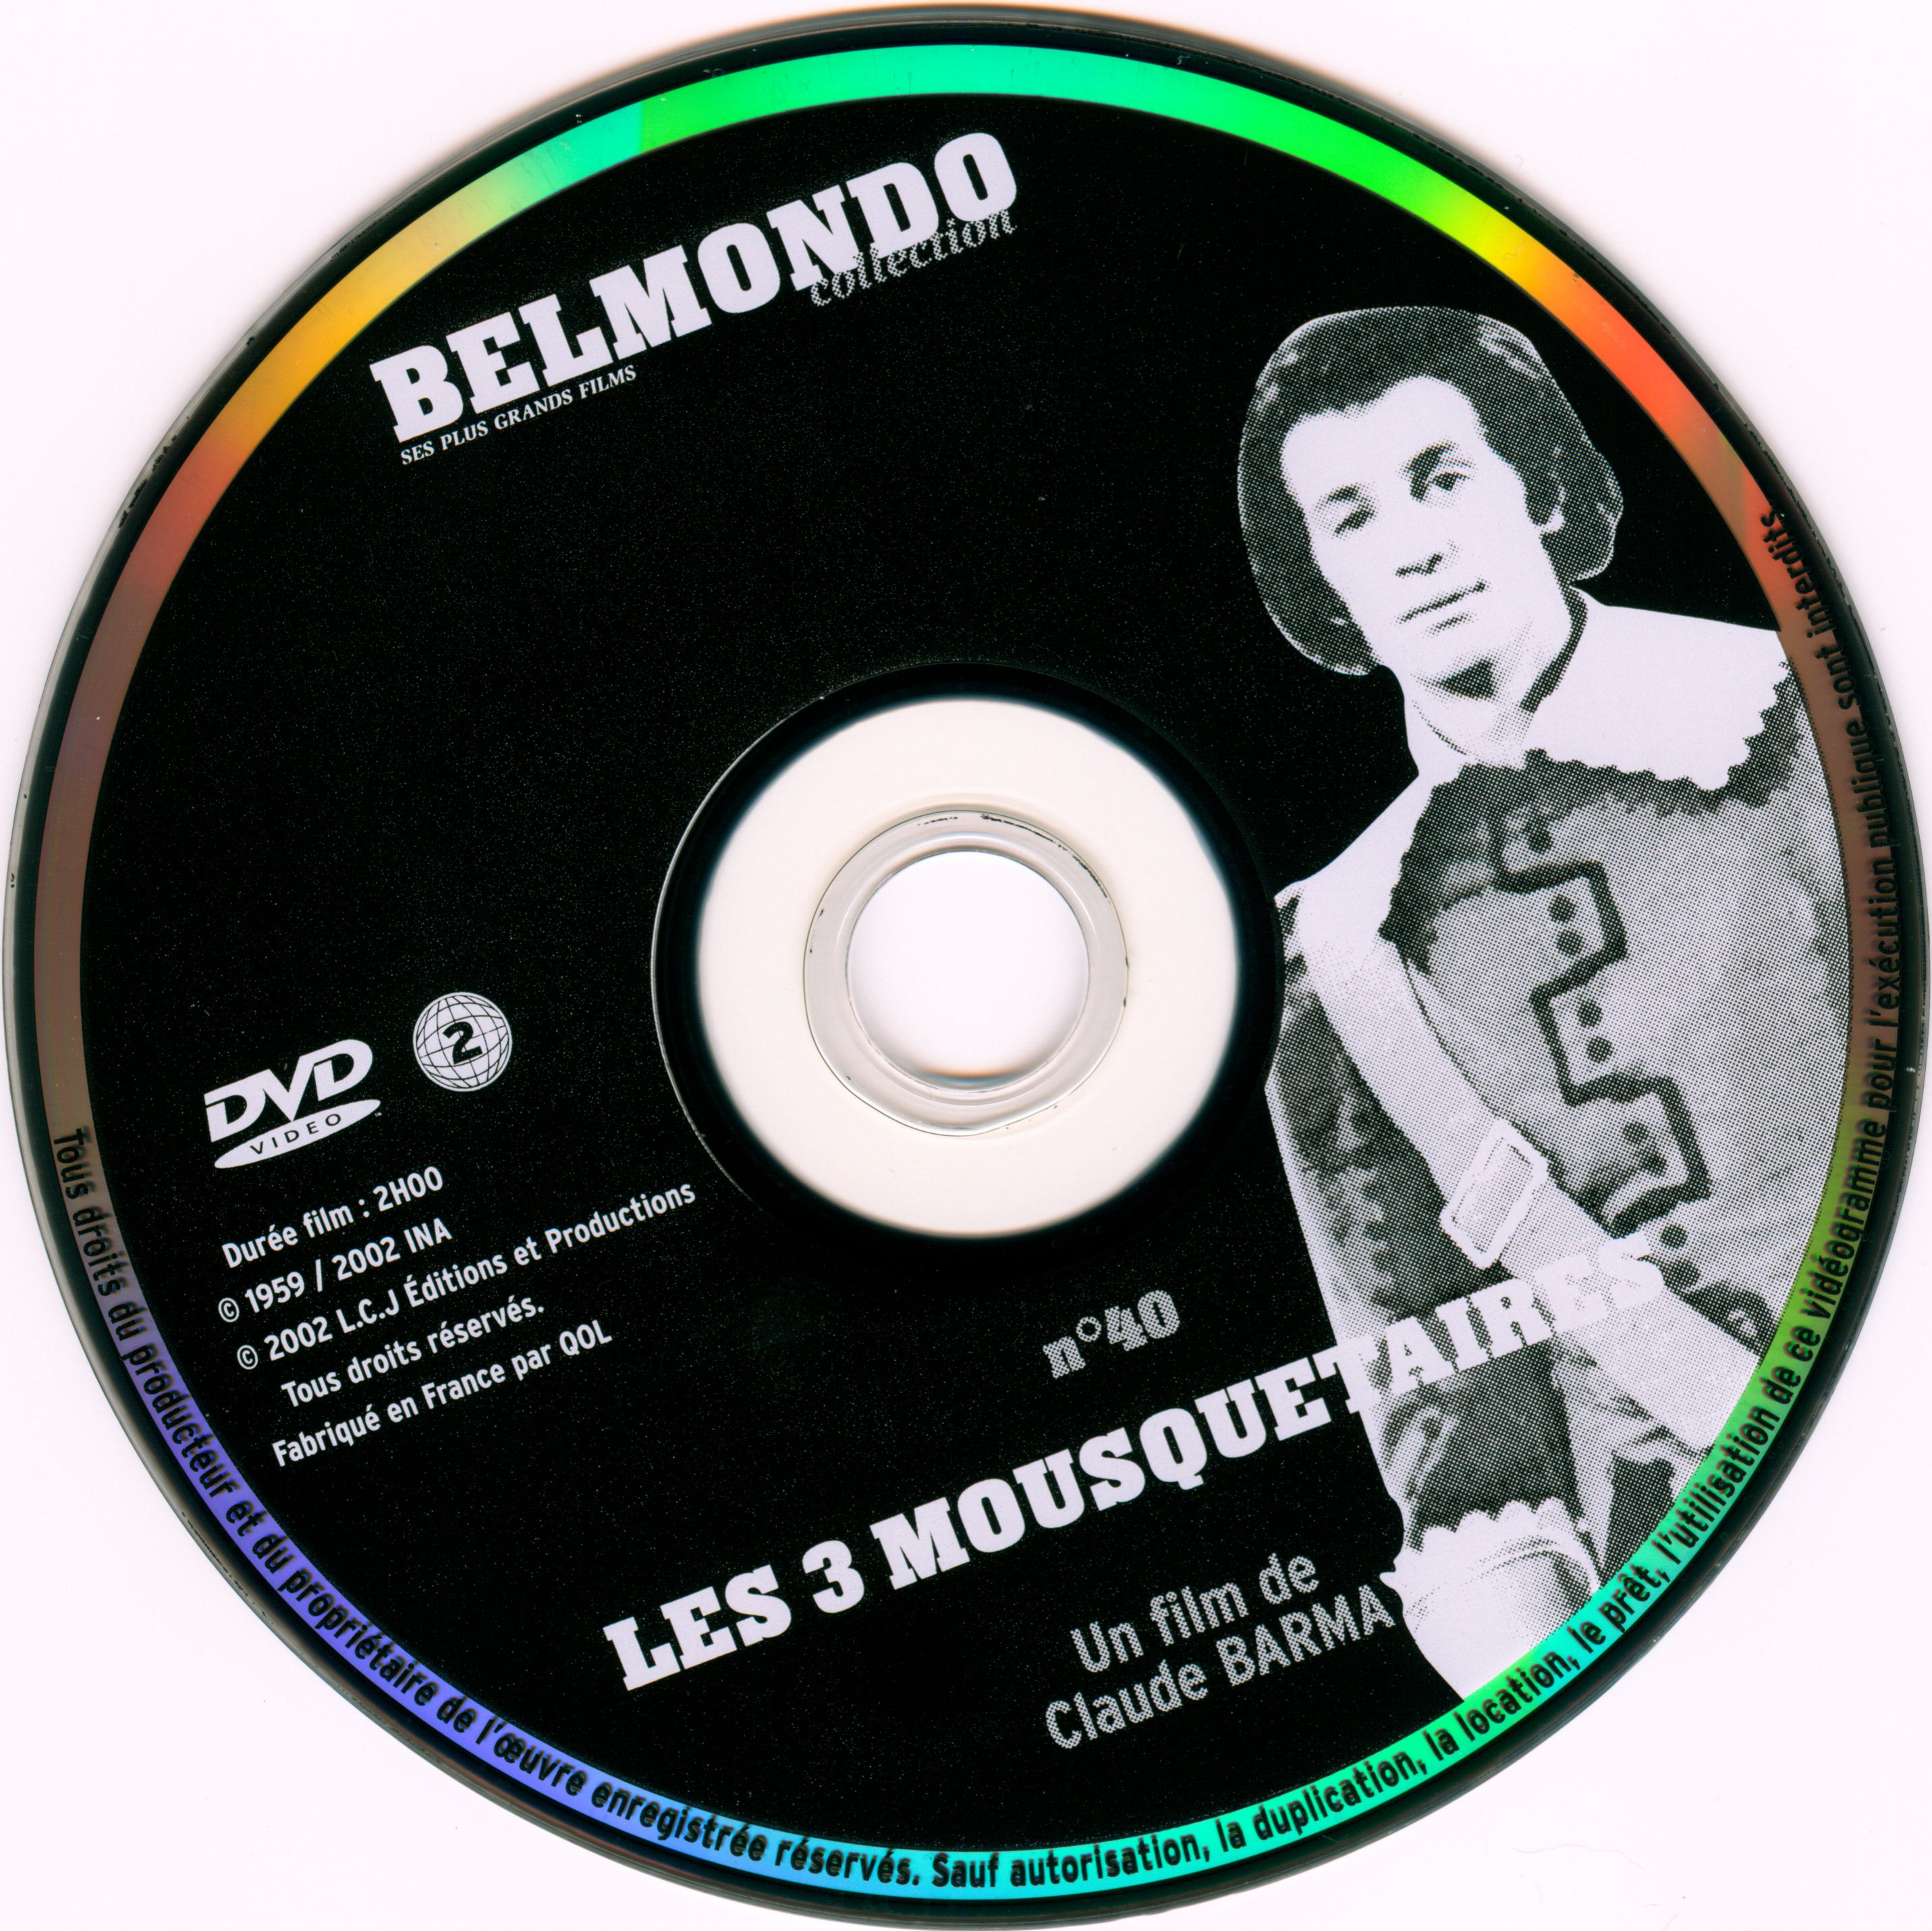 Les trois mousquetaires (Belmondo) v2